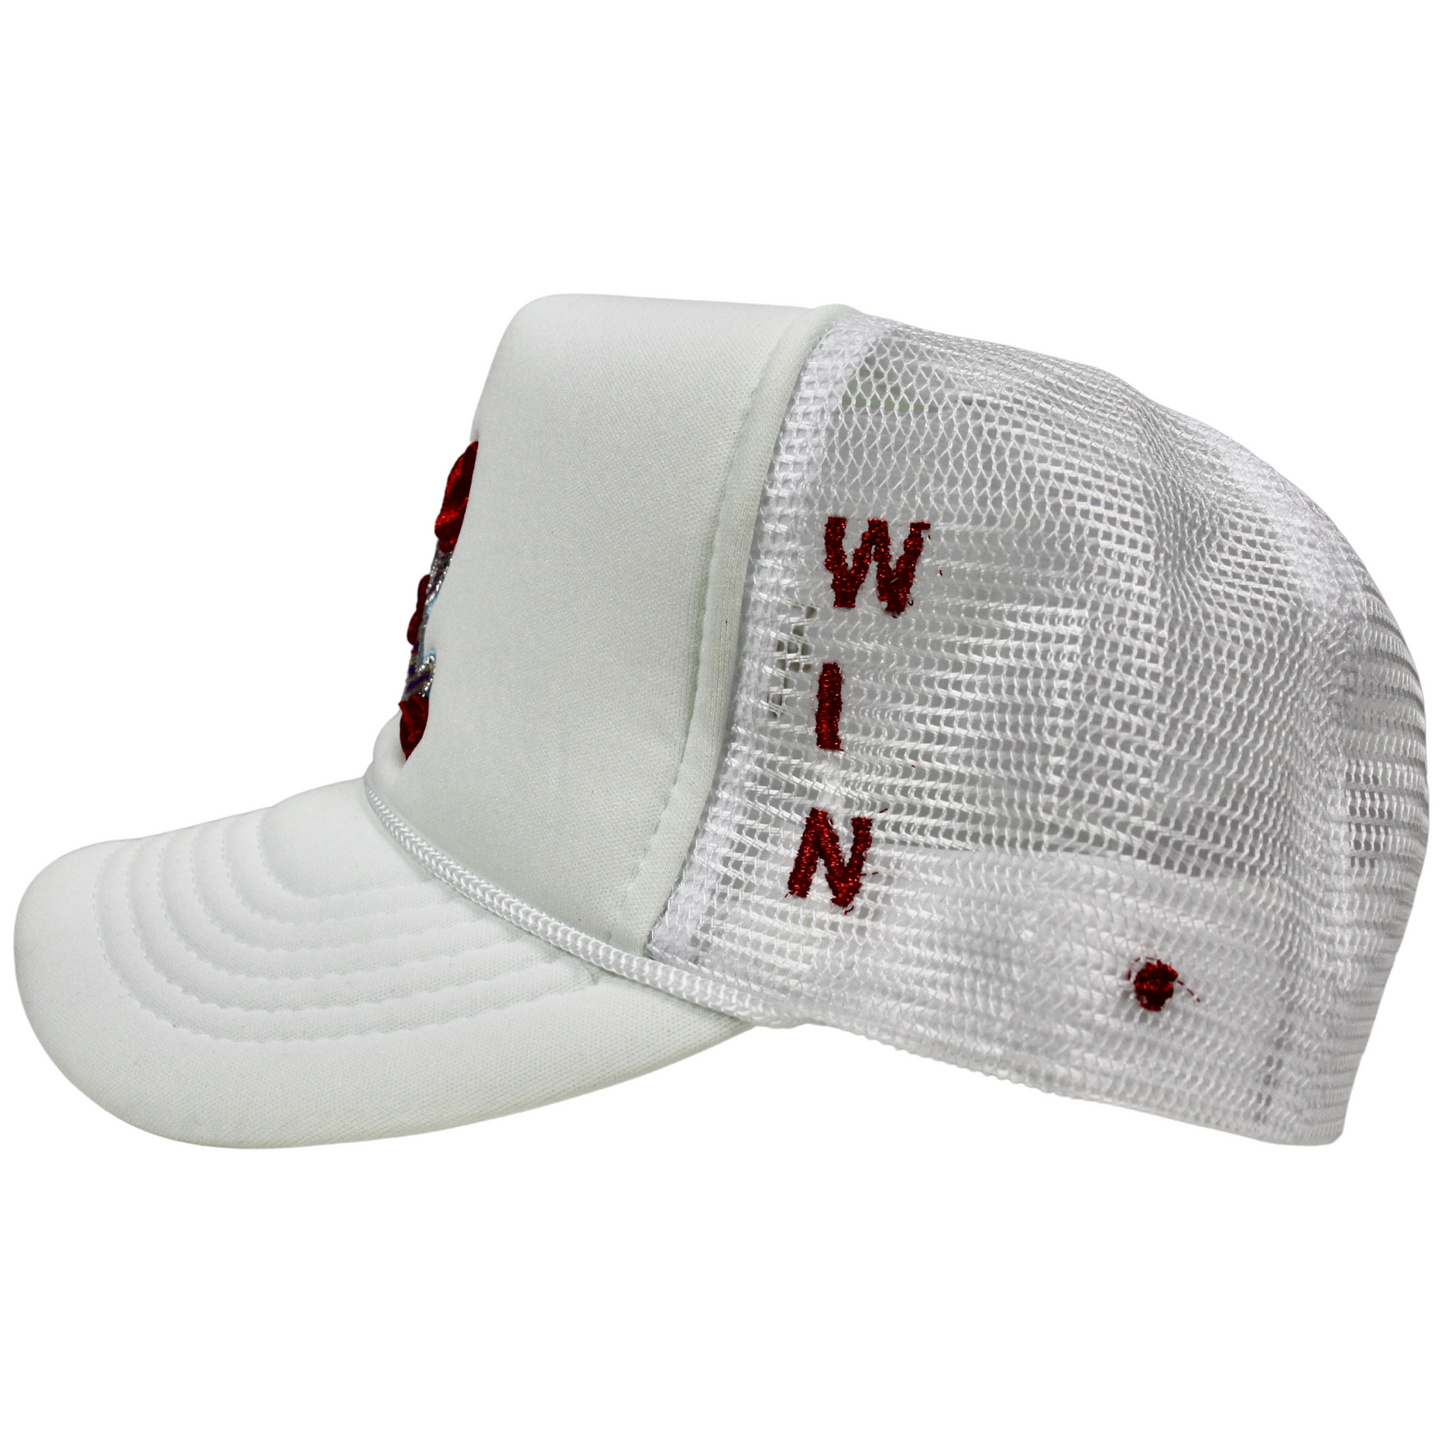 La Ropa LR Logo "Jake Paul" Trucker Hat (White)